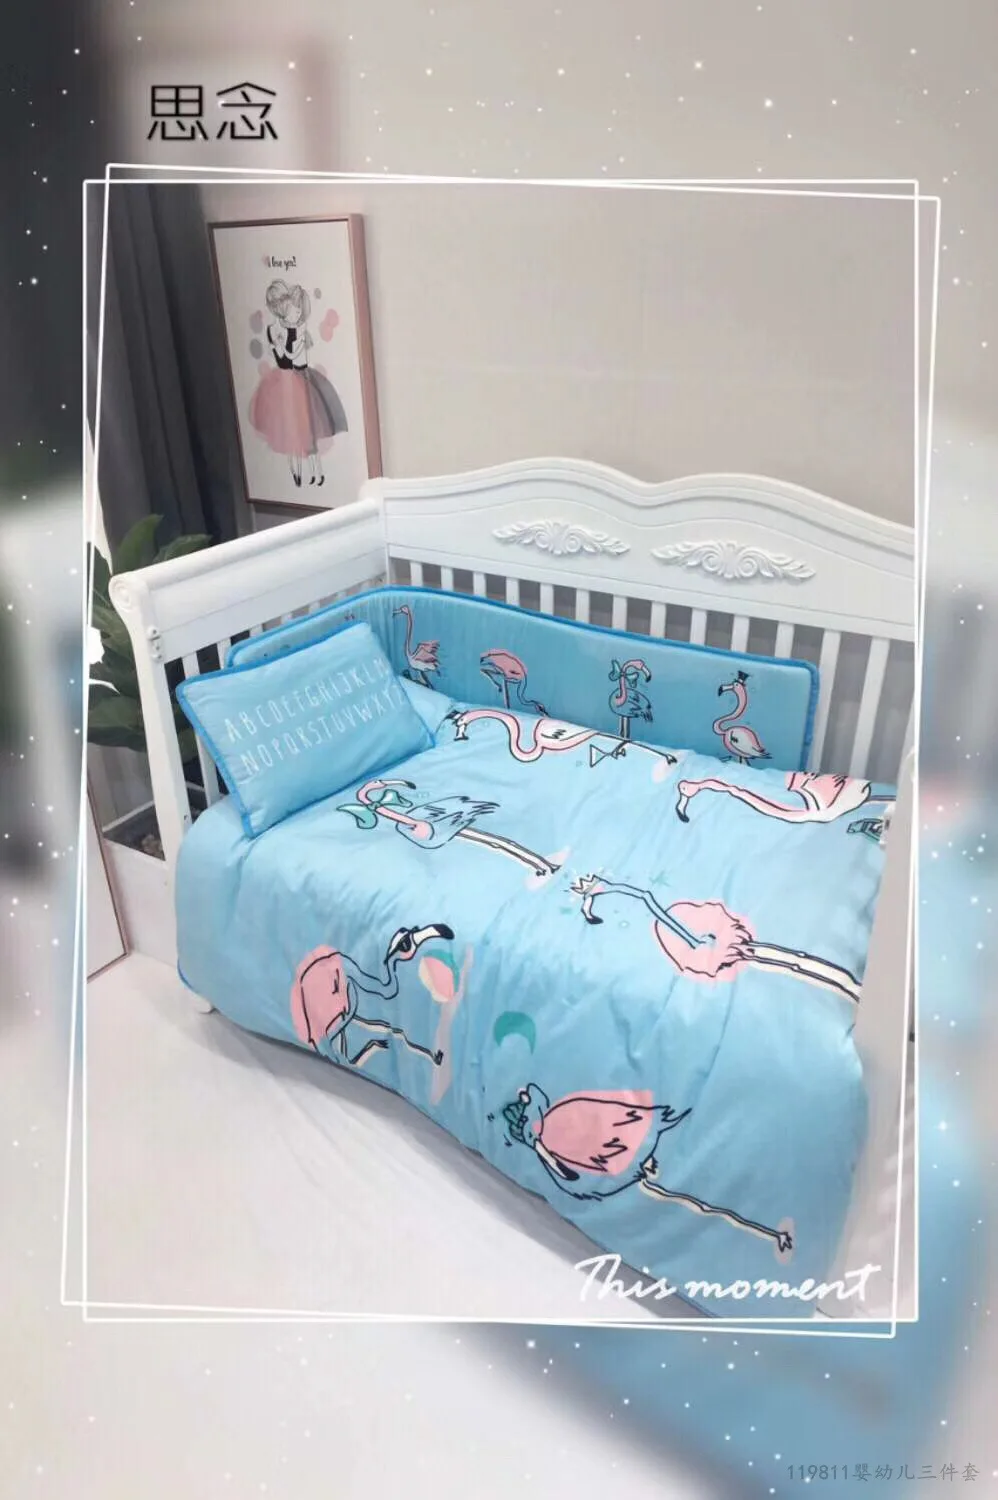 1 шт. бамперы и 1 шт. пододеяльник детская защита для кроватки мультяшная кроватка бамперы в кроватку для новорожденных многоцветная кроватка бампер Длина 150 см